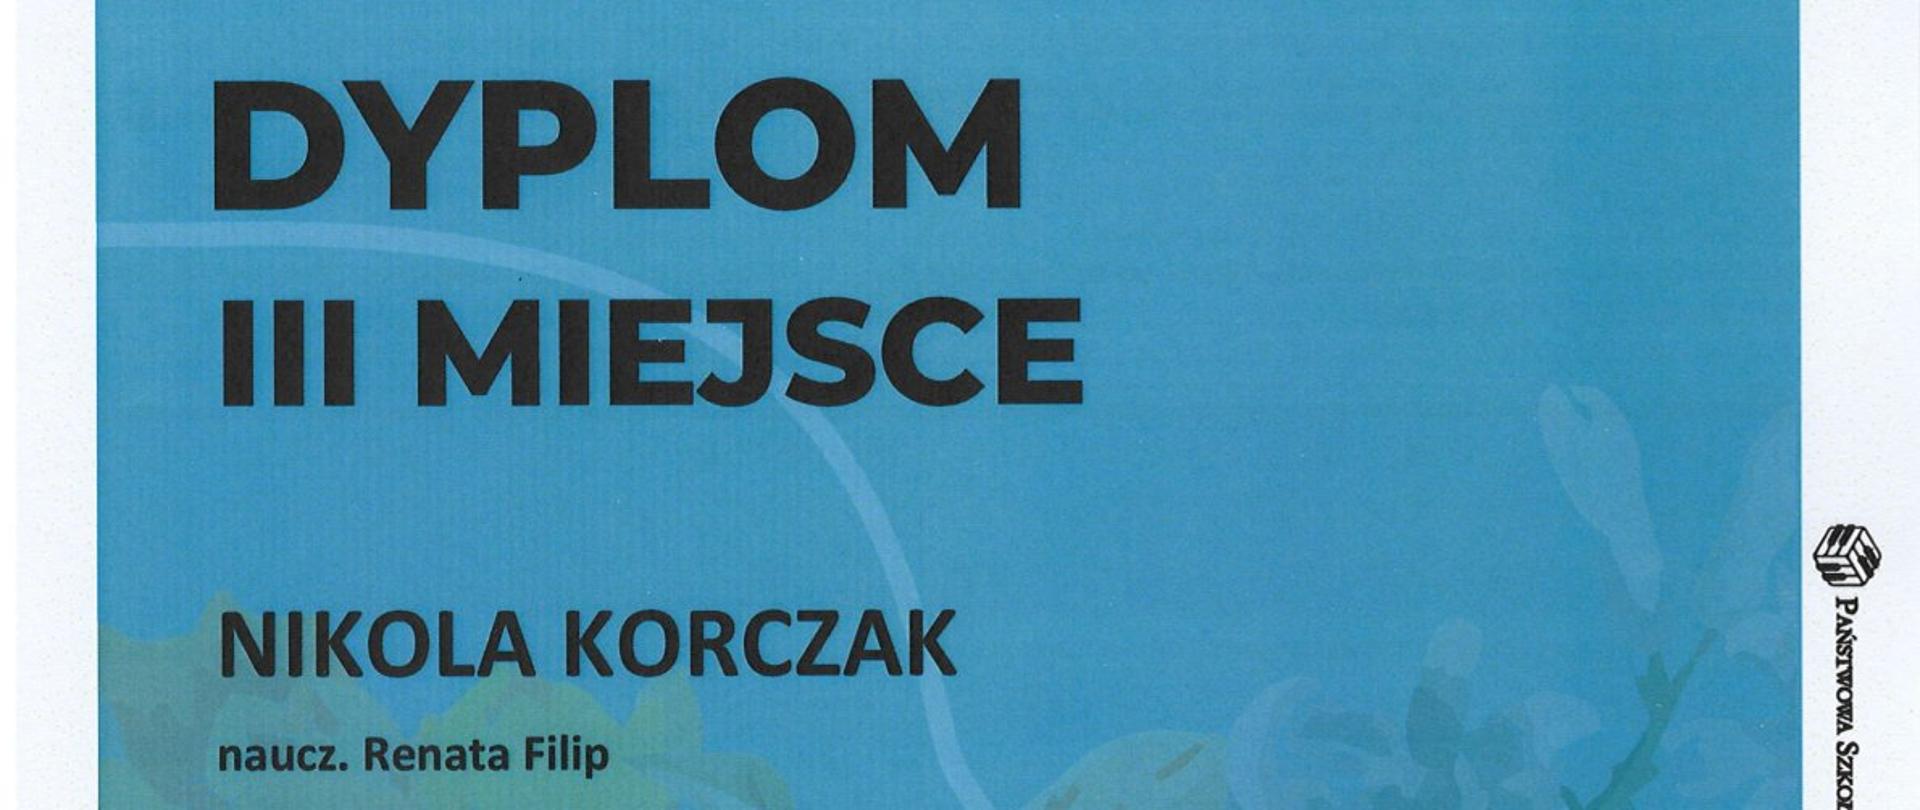 dyplom utrzymany w niebieskich odcieniach dla NIkoli Korczak za zajęcie III miejsca w konkursie "Wiosenne spotkania muzyczne"